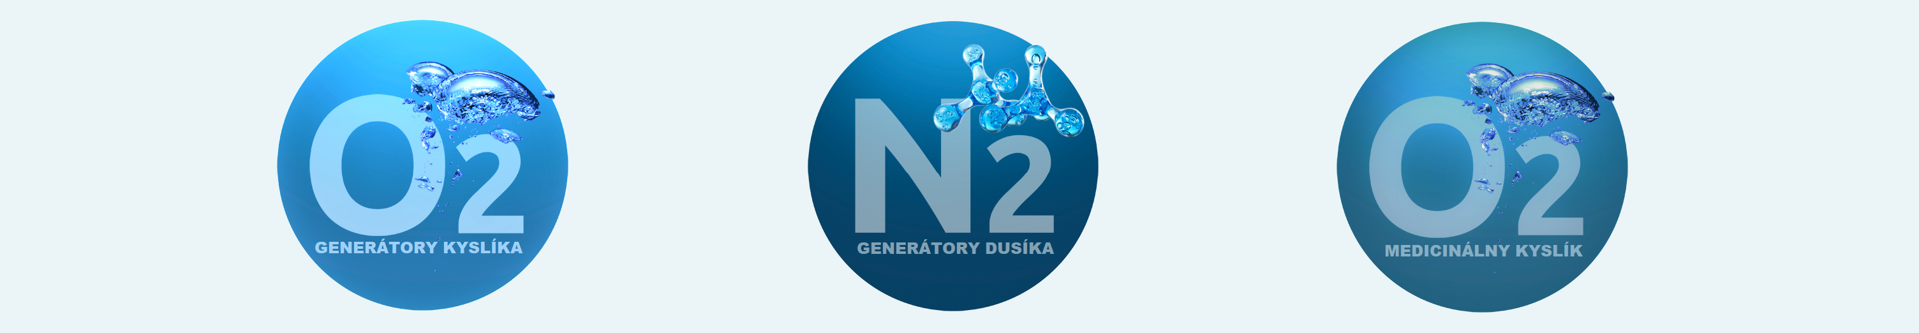 N2 O2 generatory dusíka cena predaj generator dusiku výroba kyslíka montáž